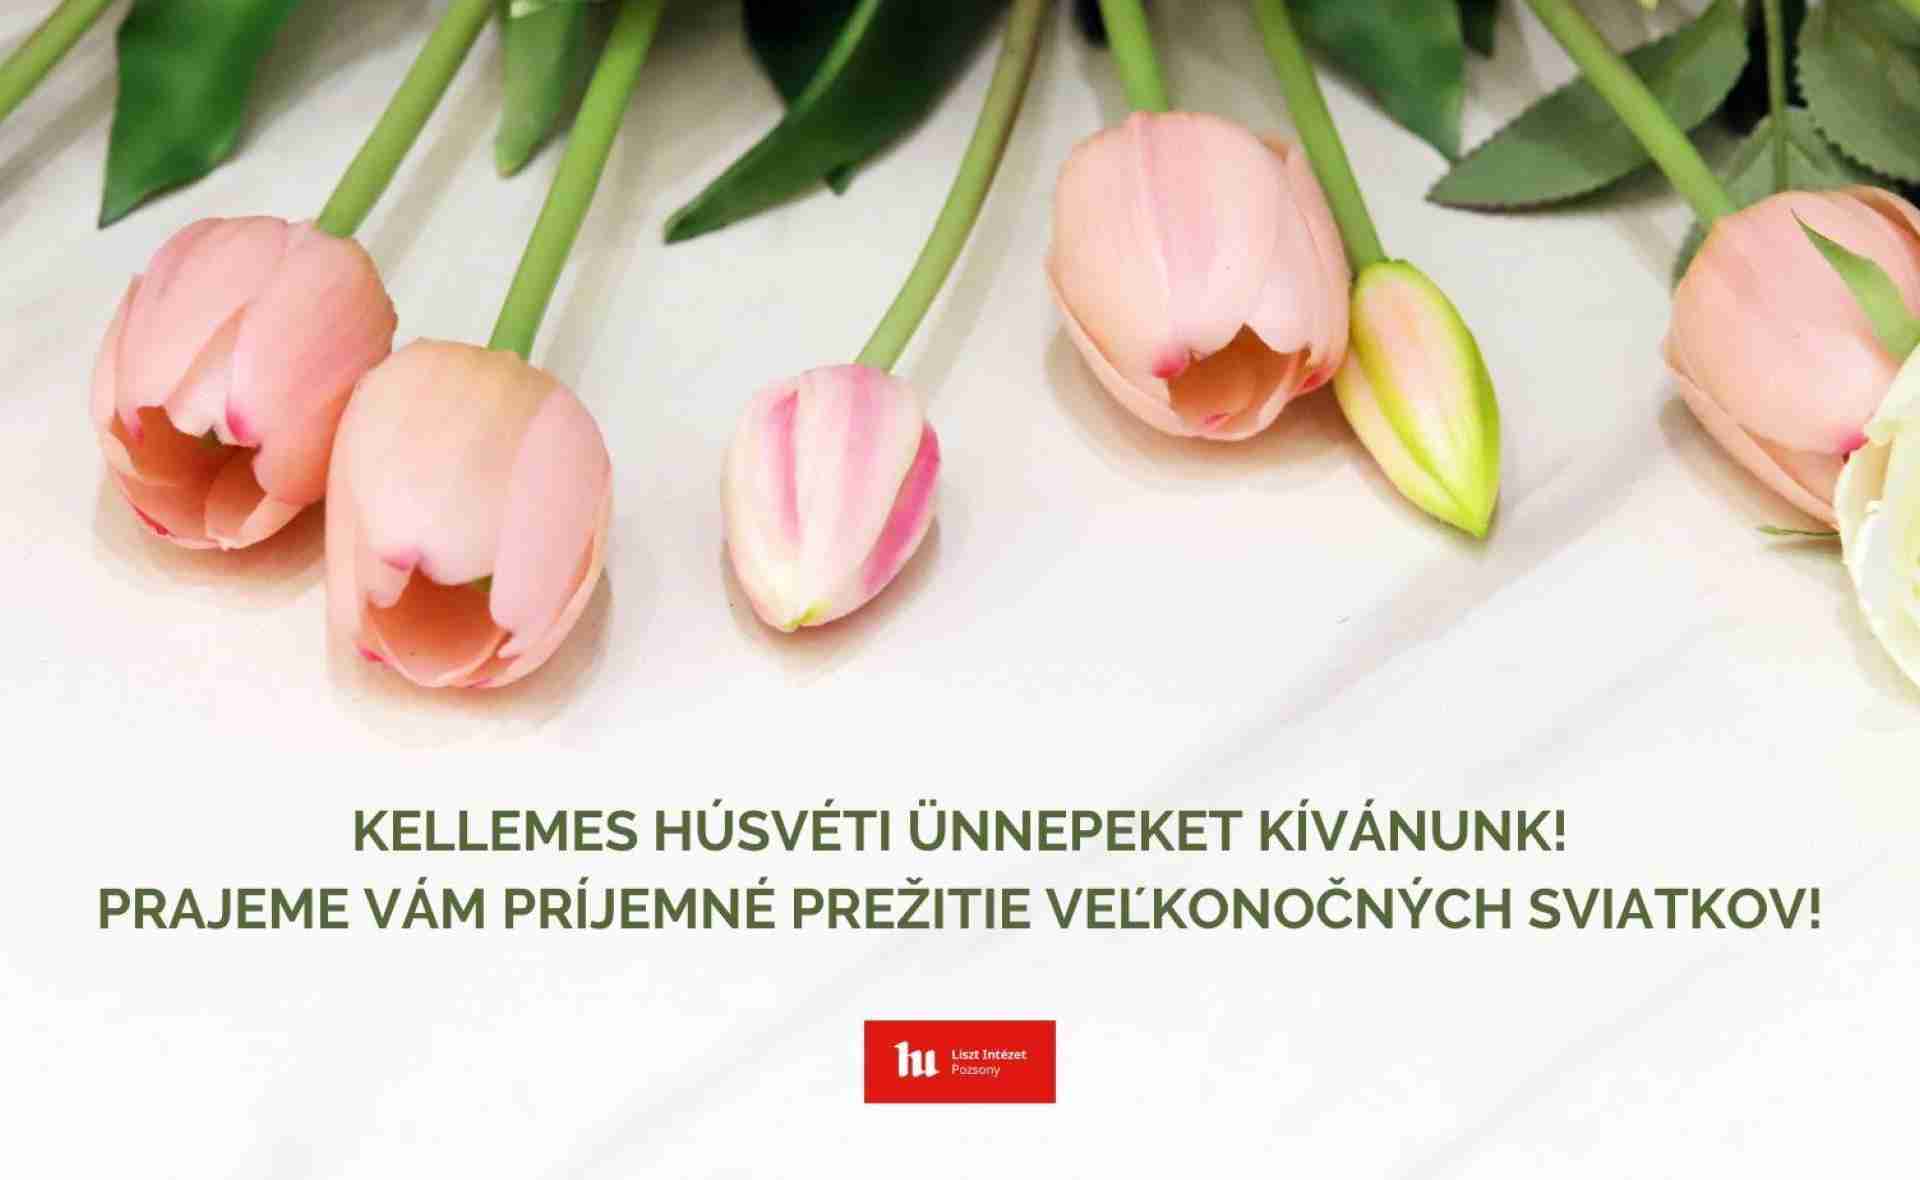 Kellemes húsvéti ünnepeket kíván a Liszt Intézet Pozsony!